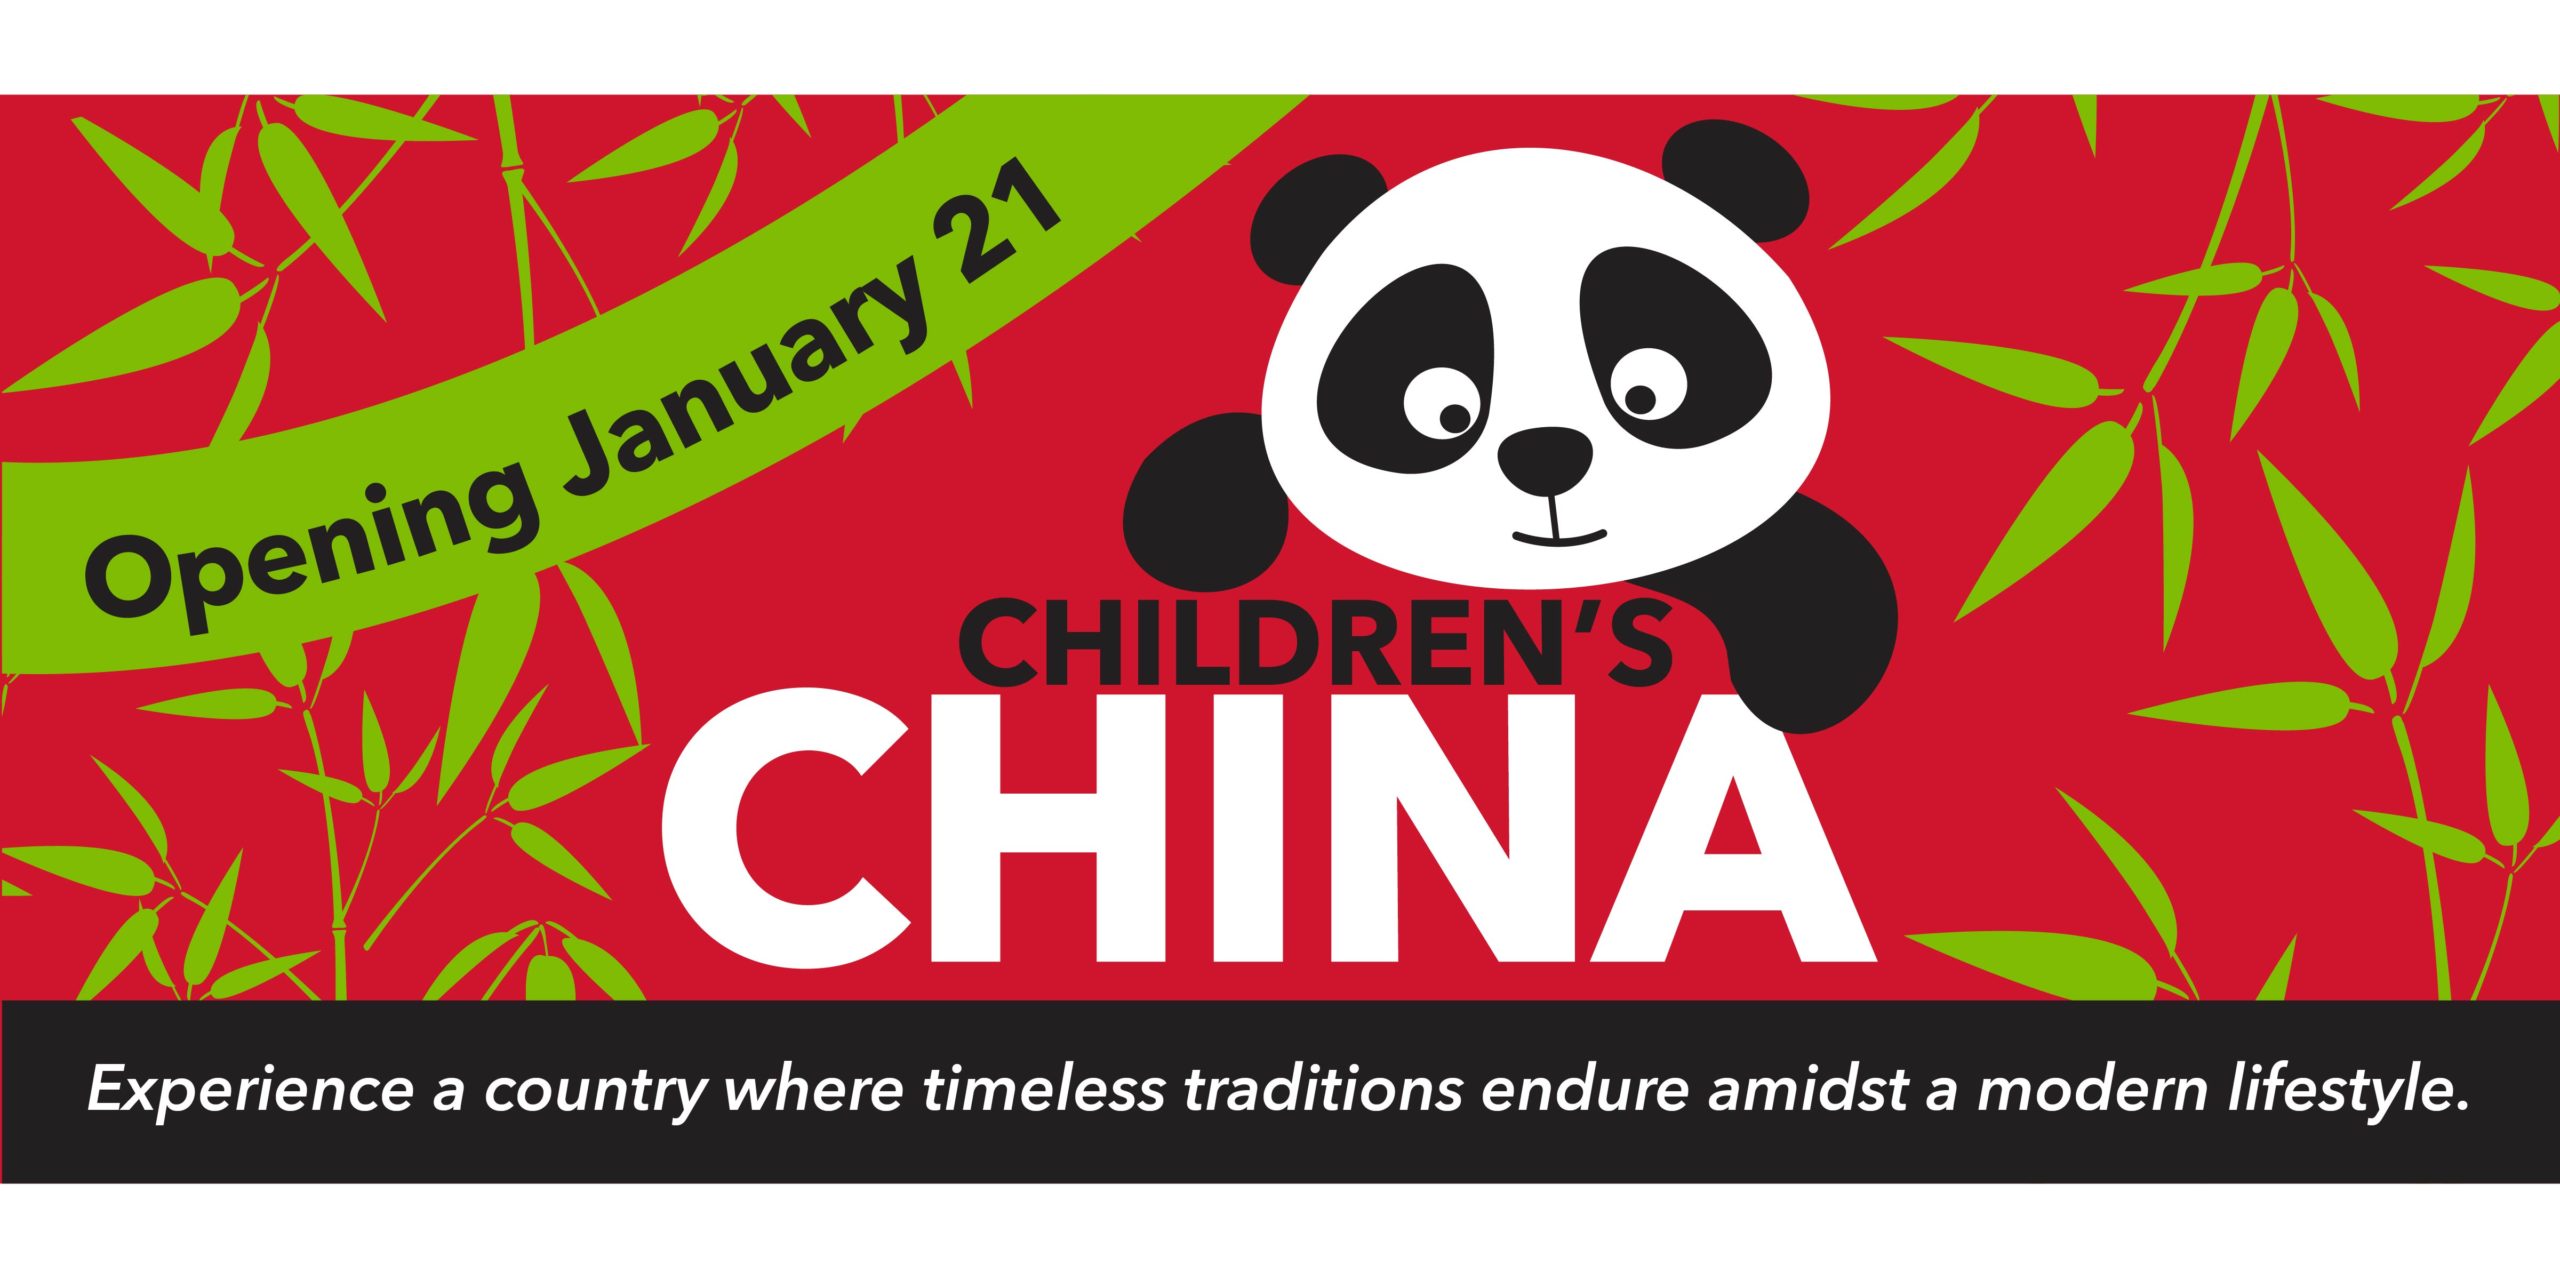 Children's China opening Jan 21 